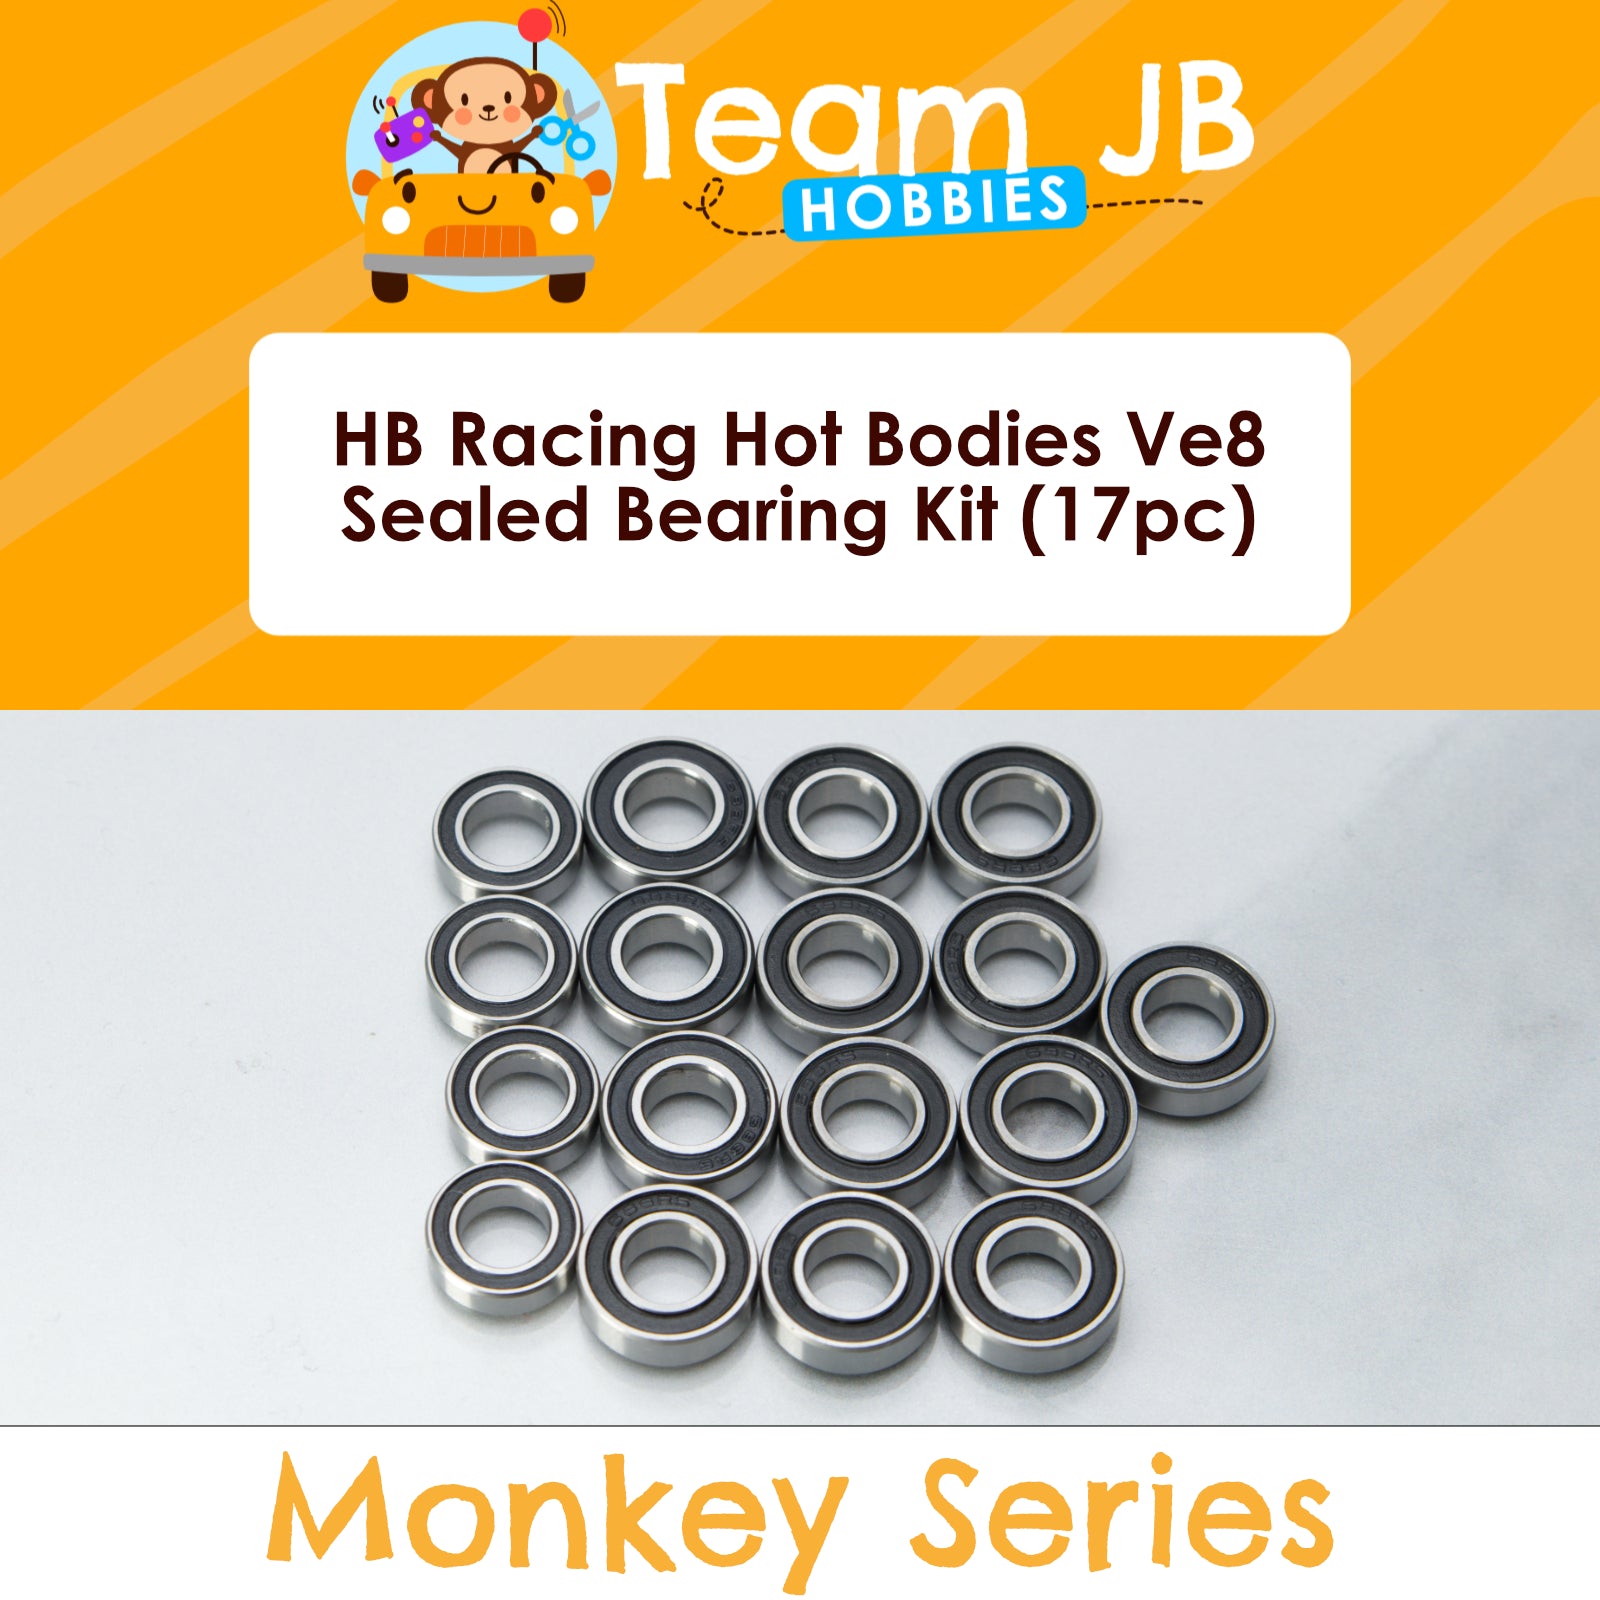 HB Racing Hot Bodies Ve8 - Sealed Bearing Kit